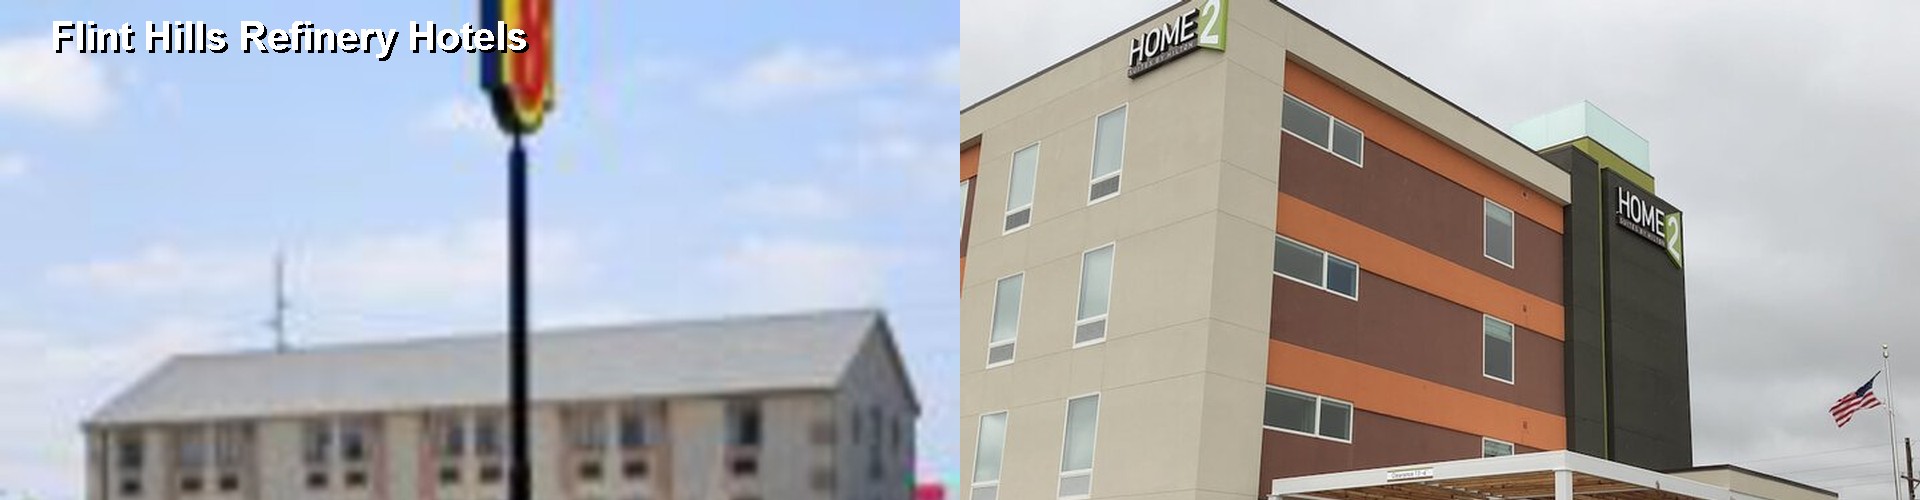 5 Best Hotels near Flint Hills Refinery